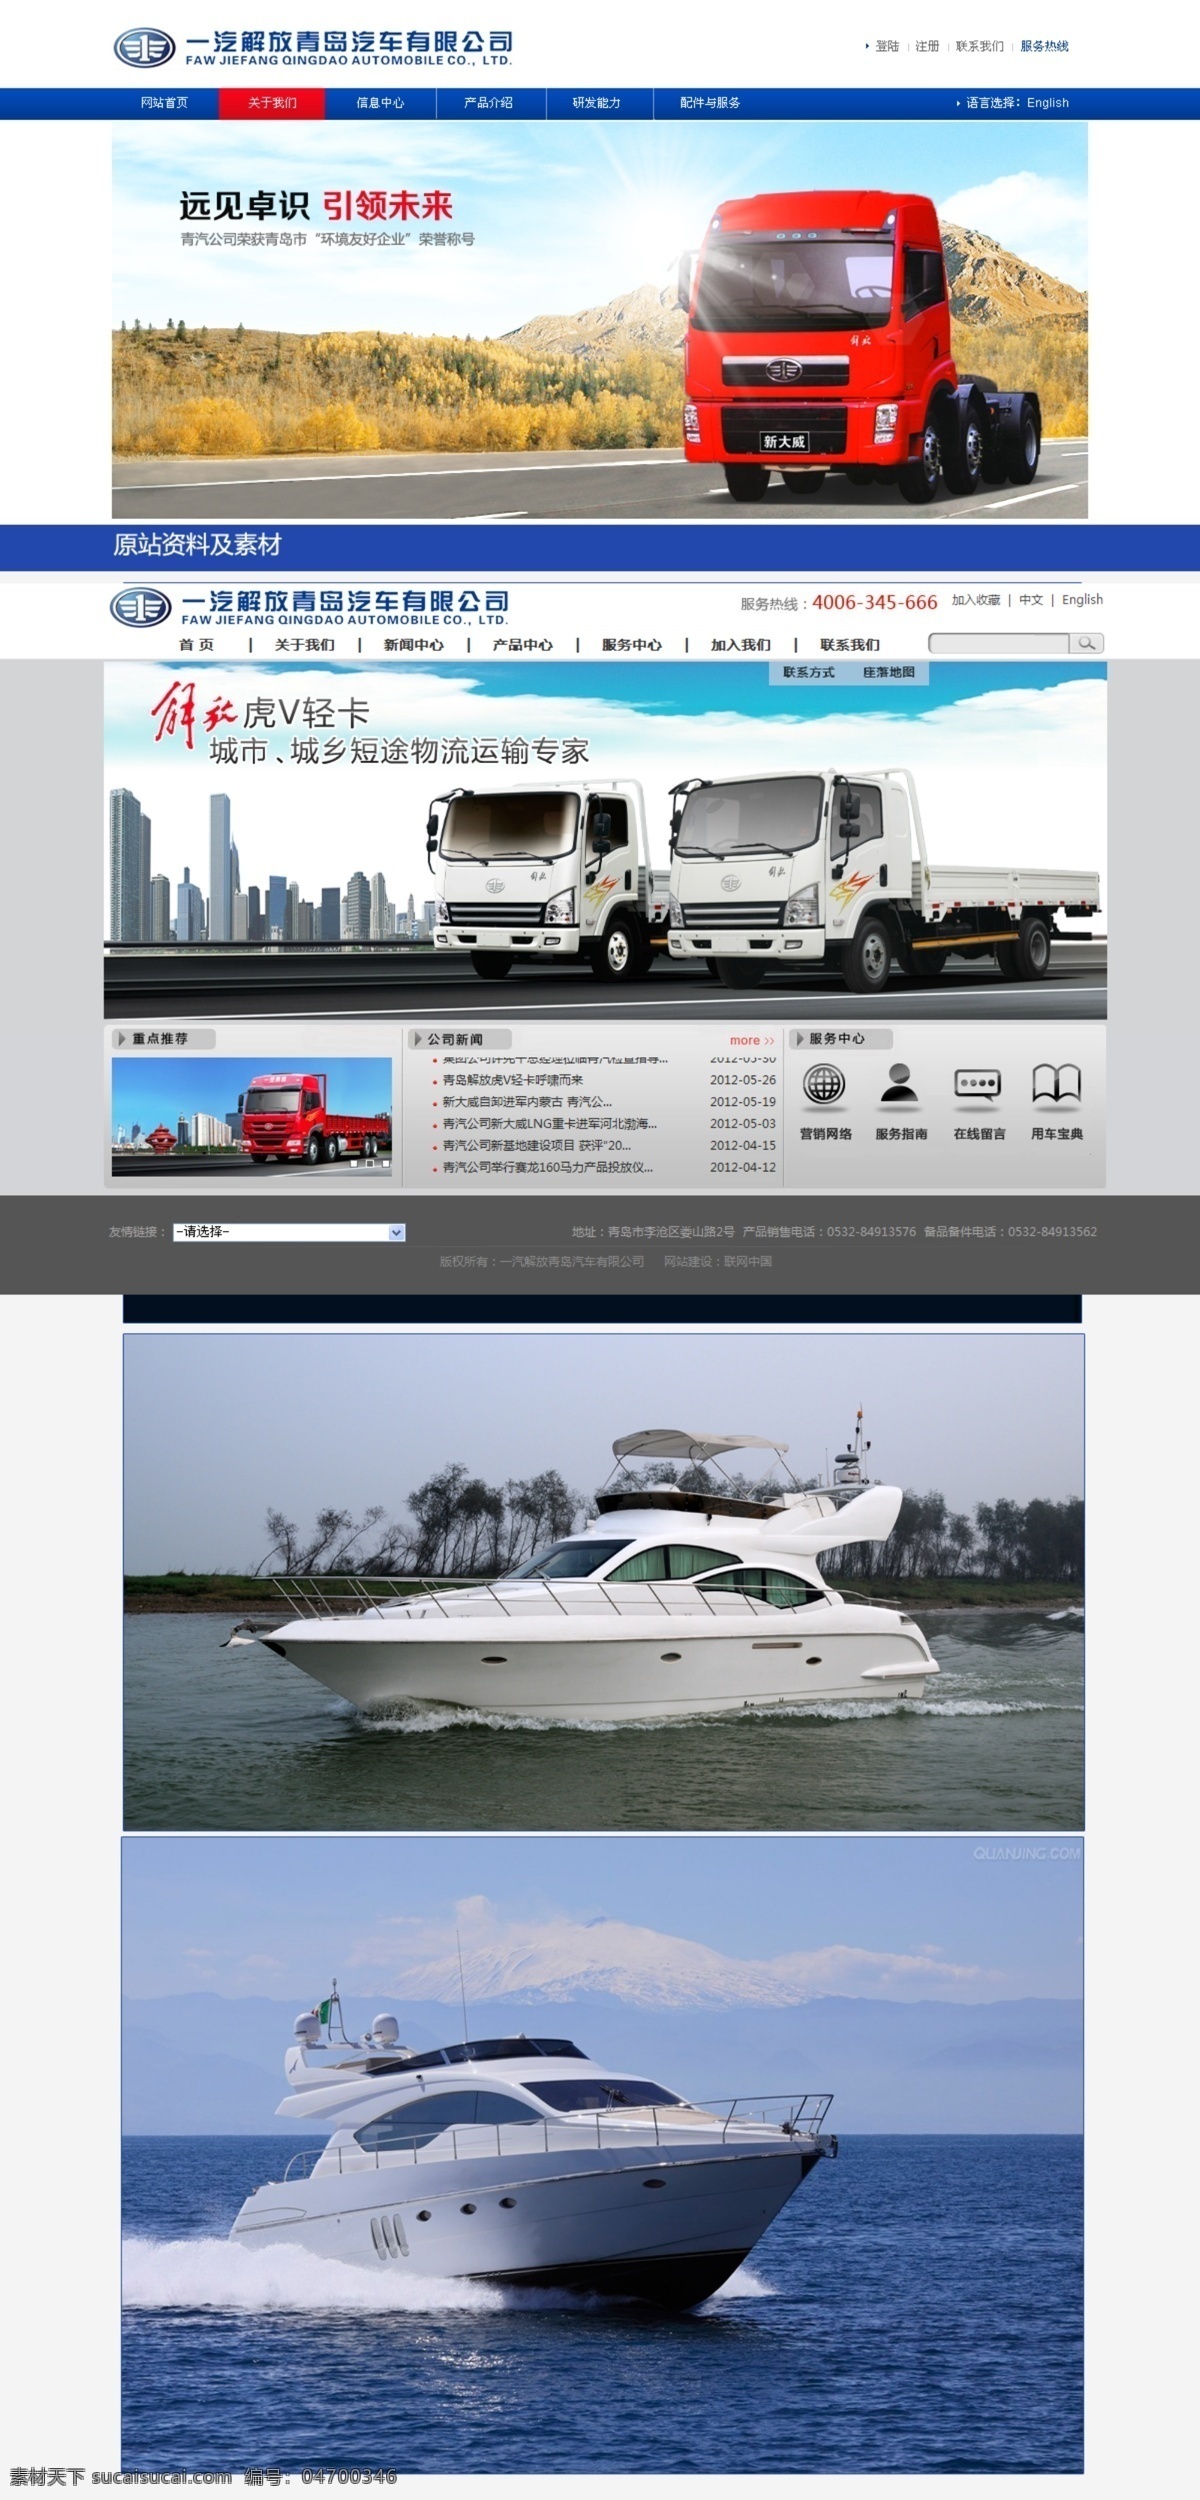 大海 广告 海洋 货船 轮船 网页模板 源文件 中文模板 网页 货船网页 网页素材